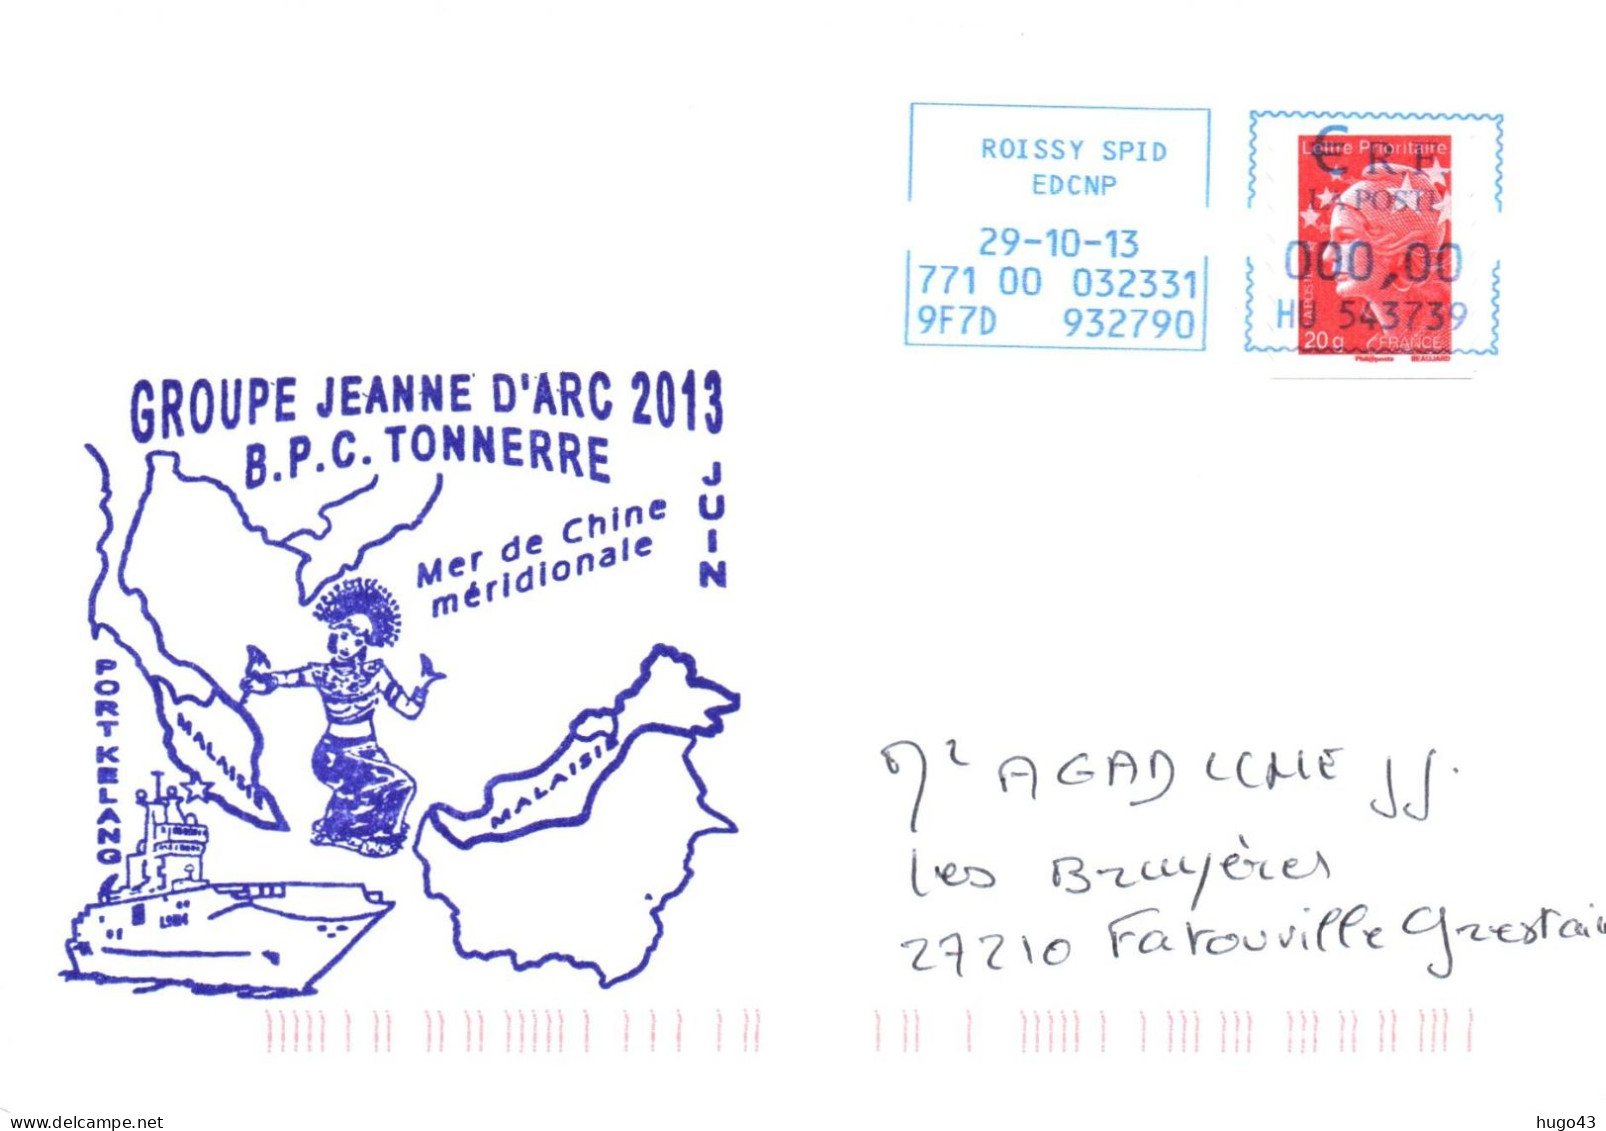 ENVELOPPE AVEC CACHET B.P.C. TONNERRE - GROUPE JEANNE D' ARC 2013 - MER DE CHINE MERIDIONALE LE 29/10/13 - Scheepspost